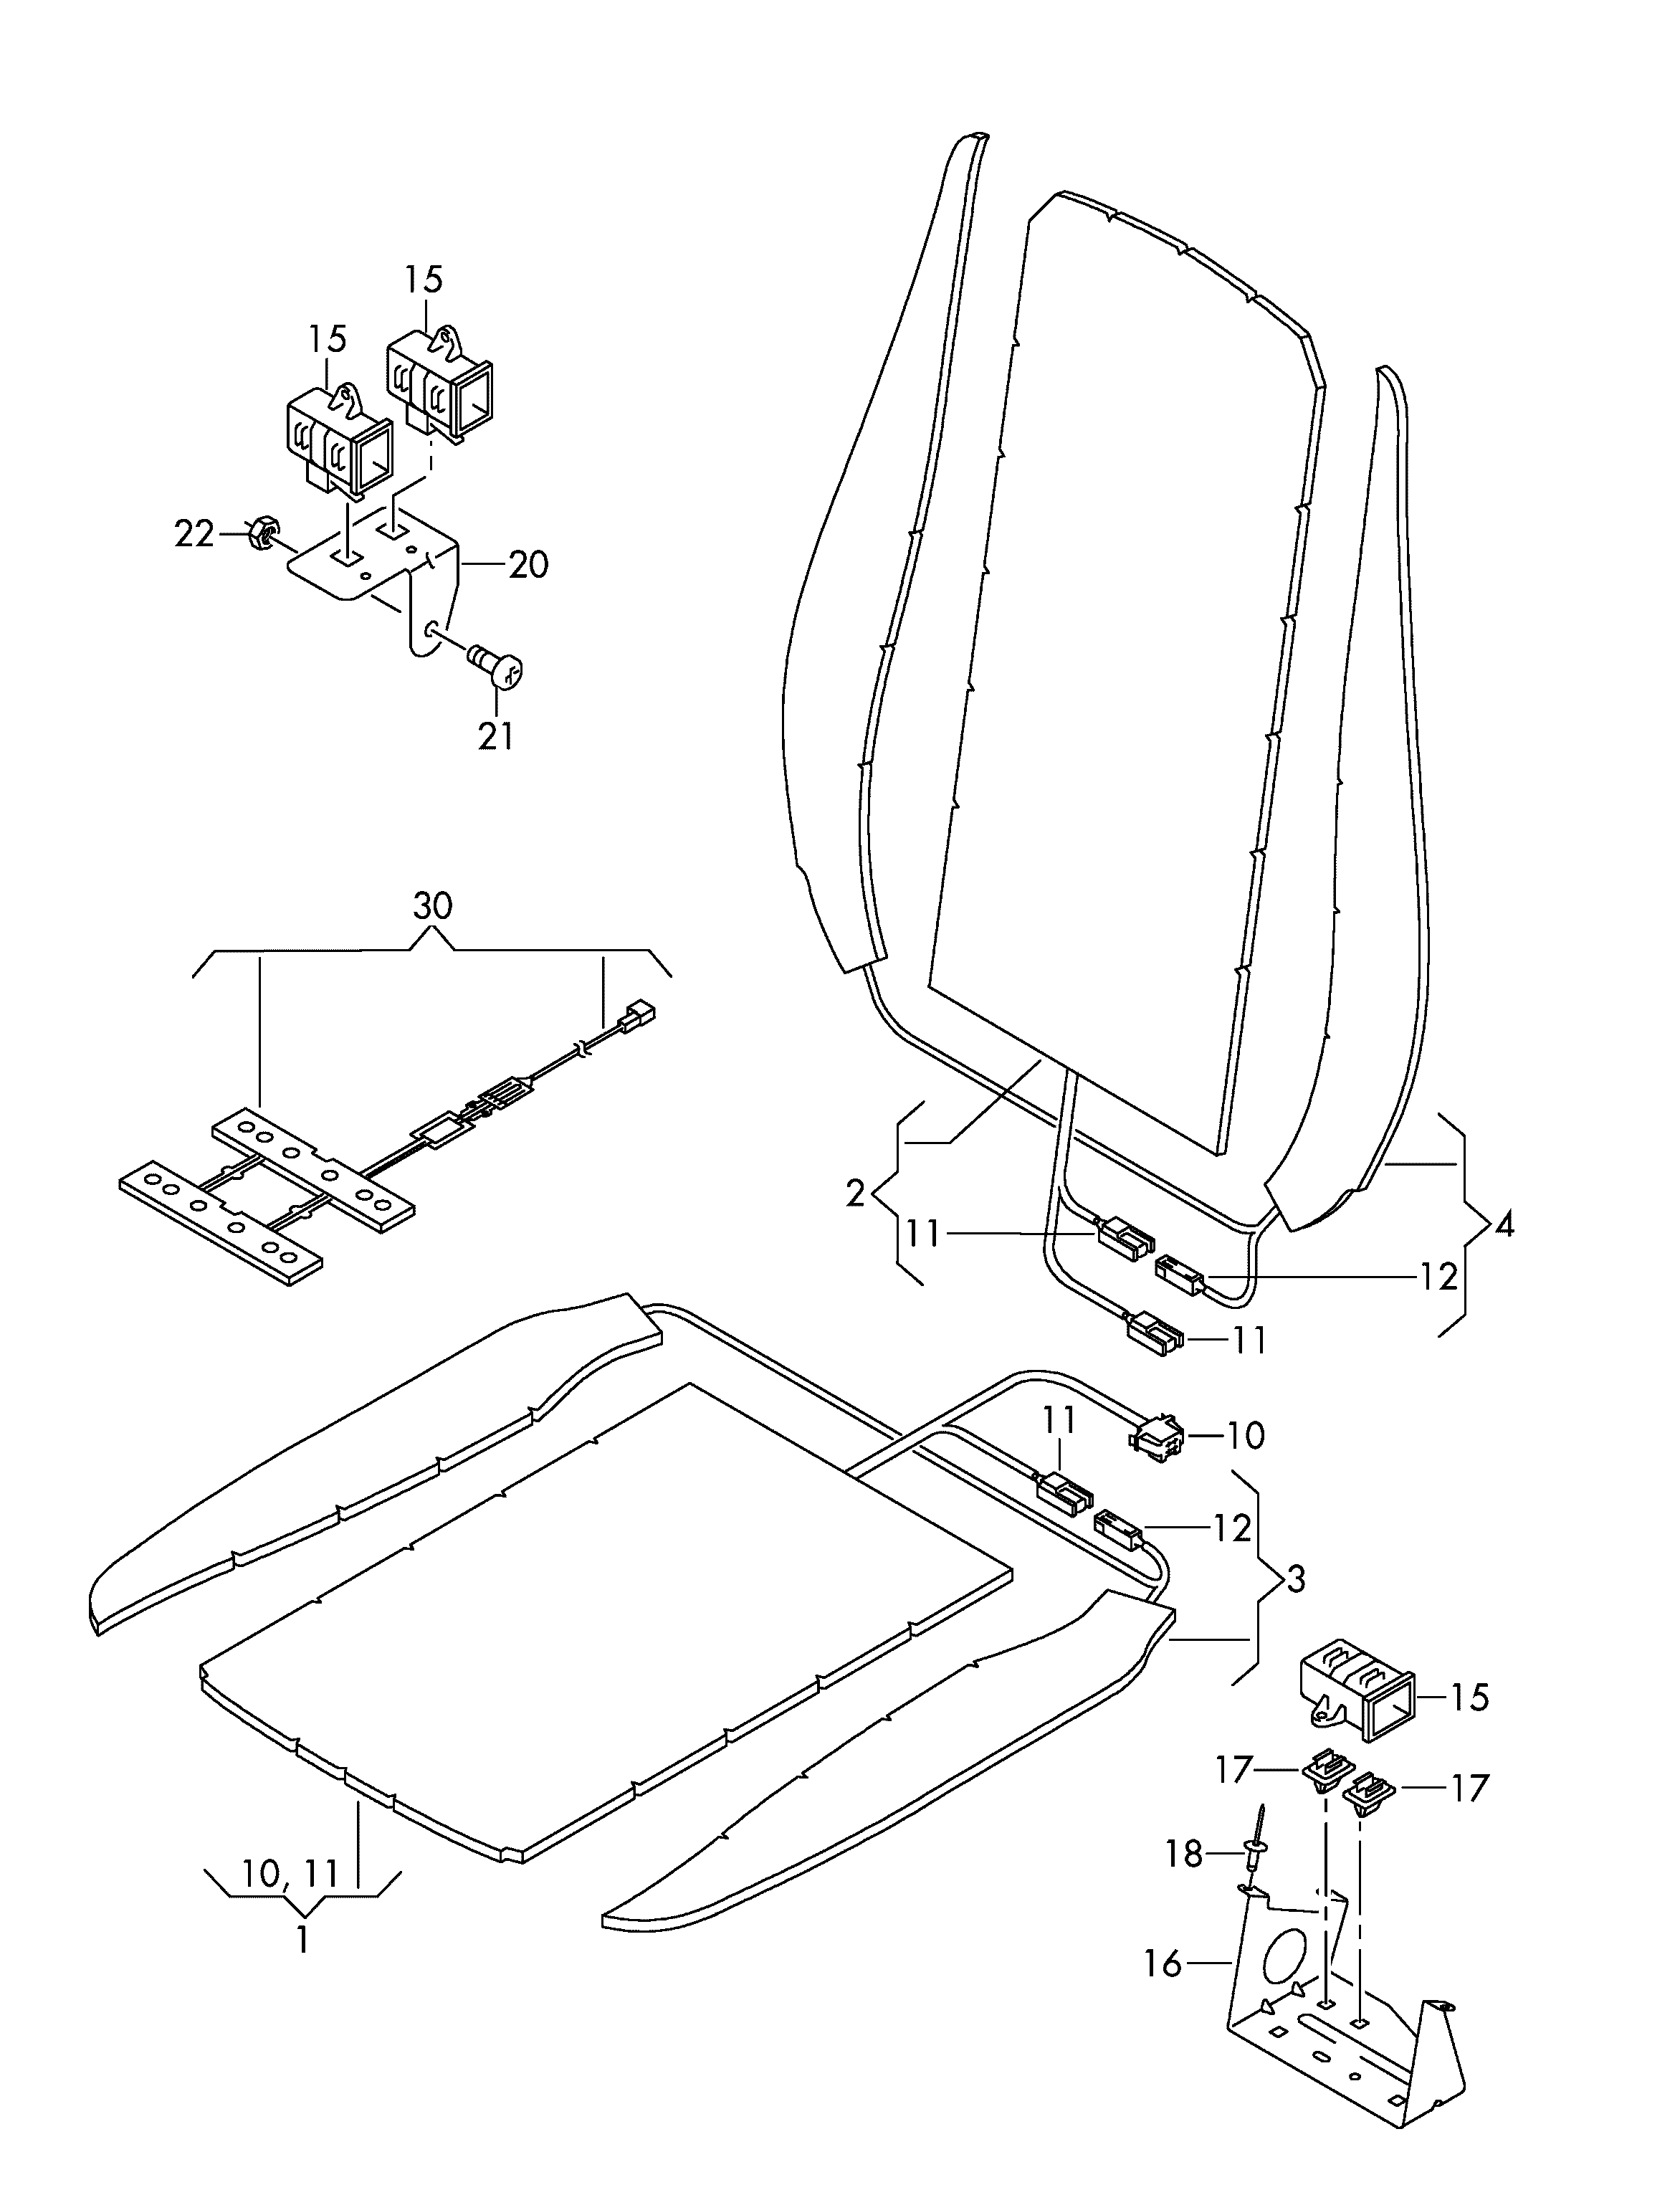 inlay for seat occupied
sensor - Touareg(TOUA)  